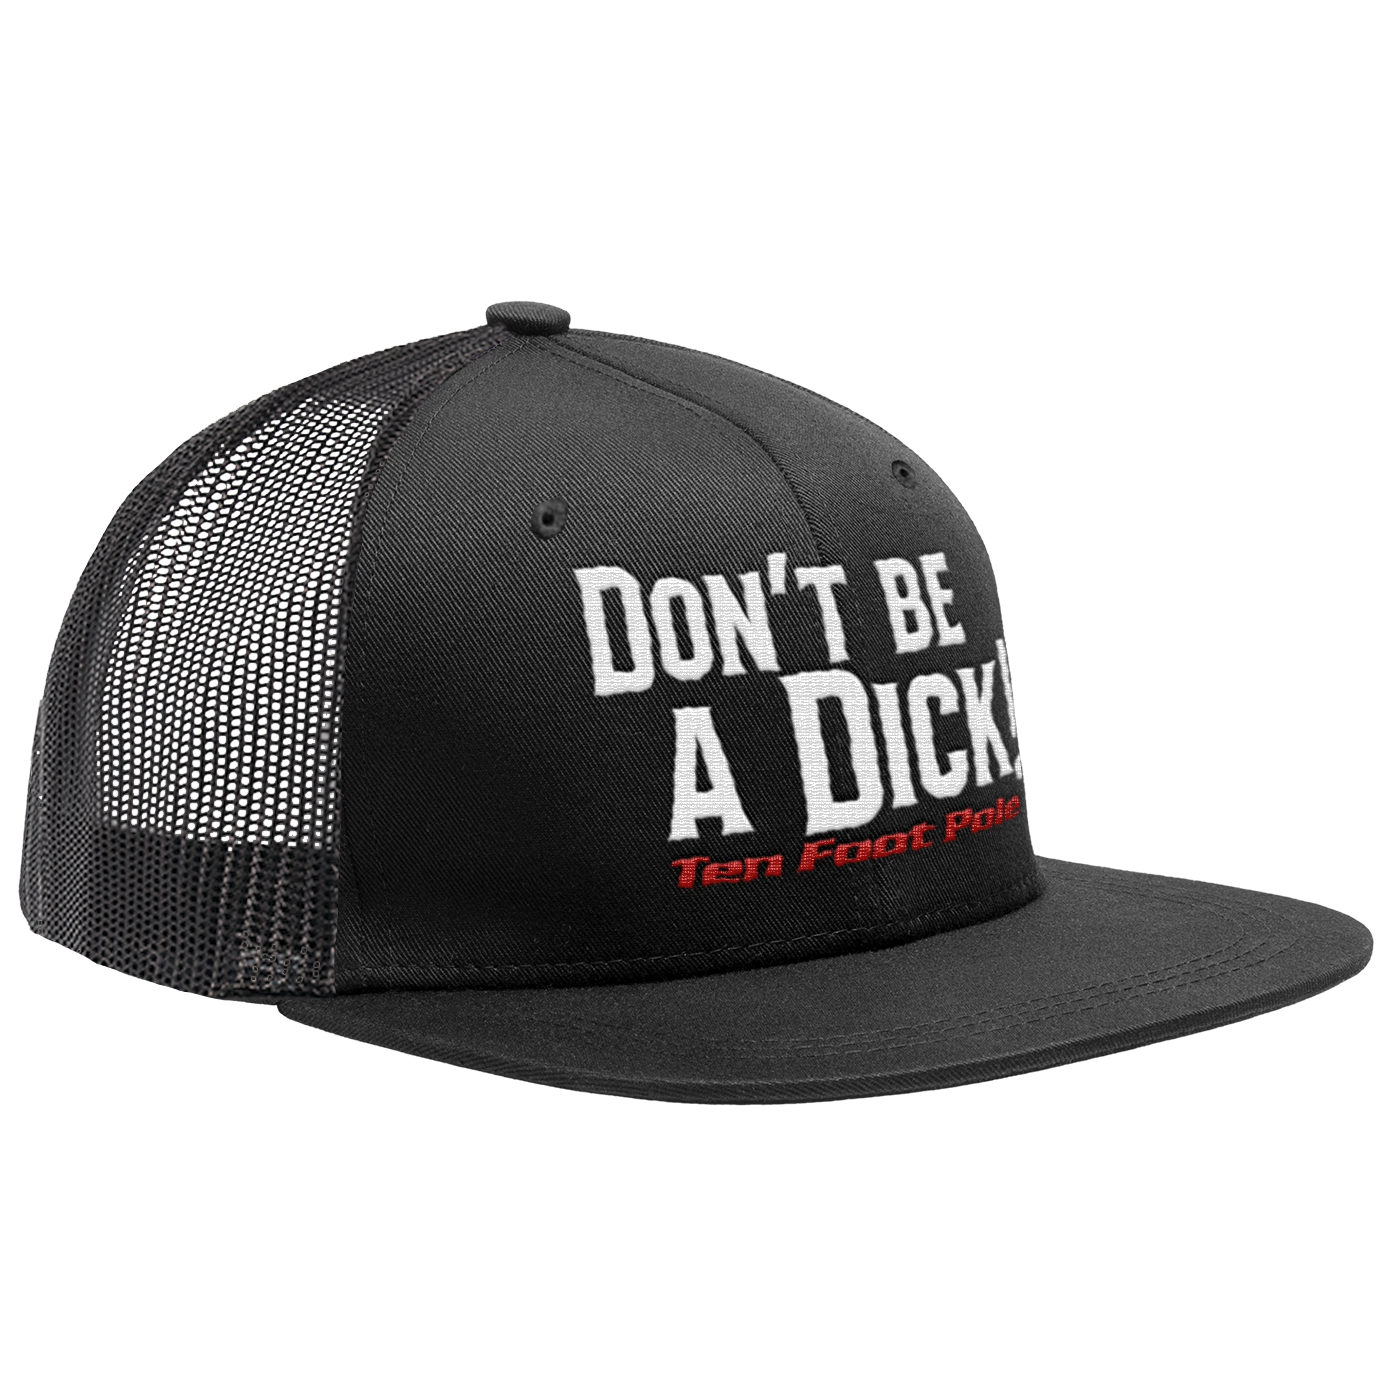 TEN FOOT POLE - "Don't Be A Dick" (Black) (Trucker Cap)